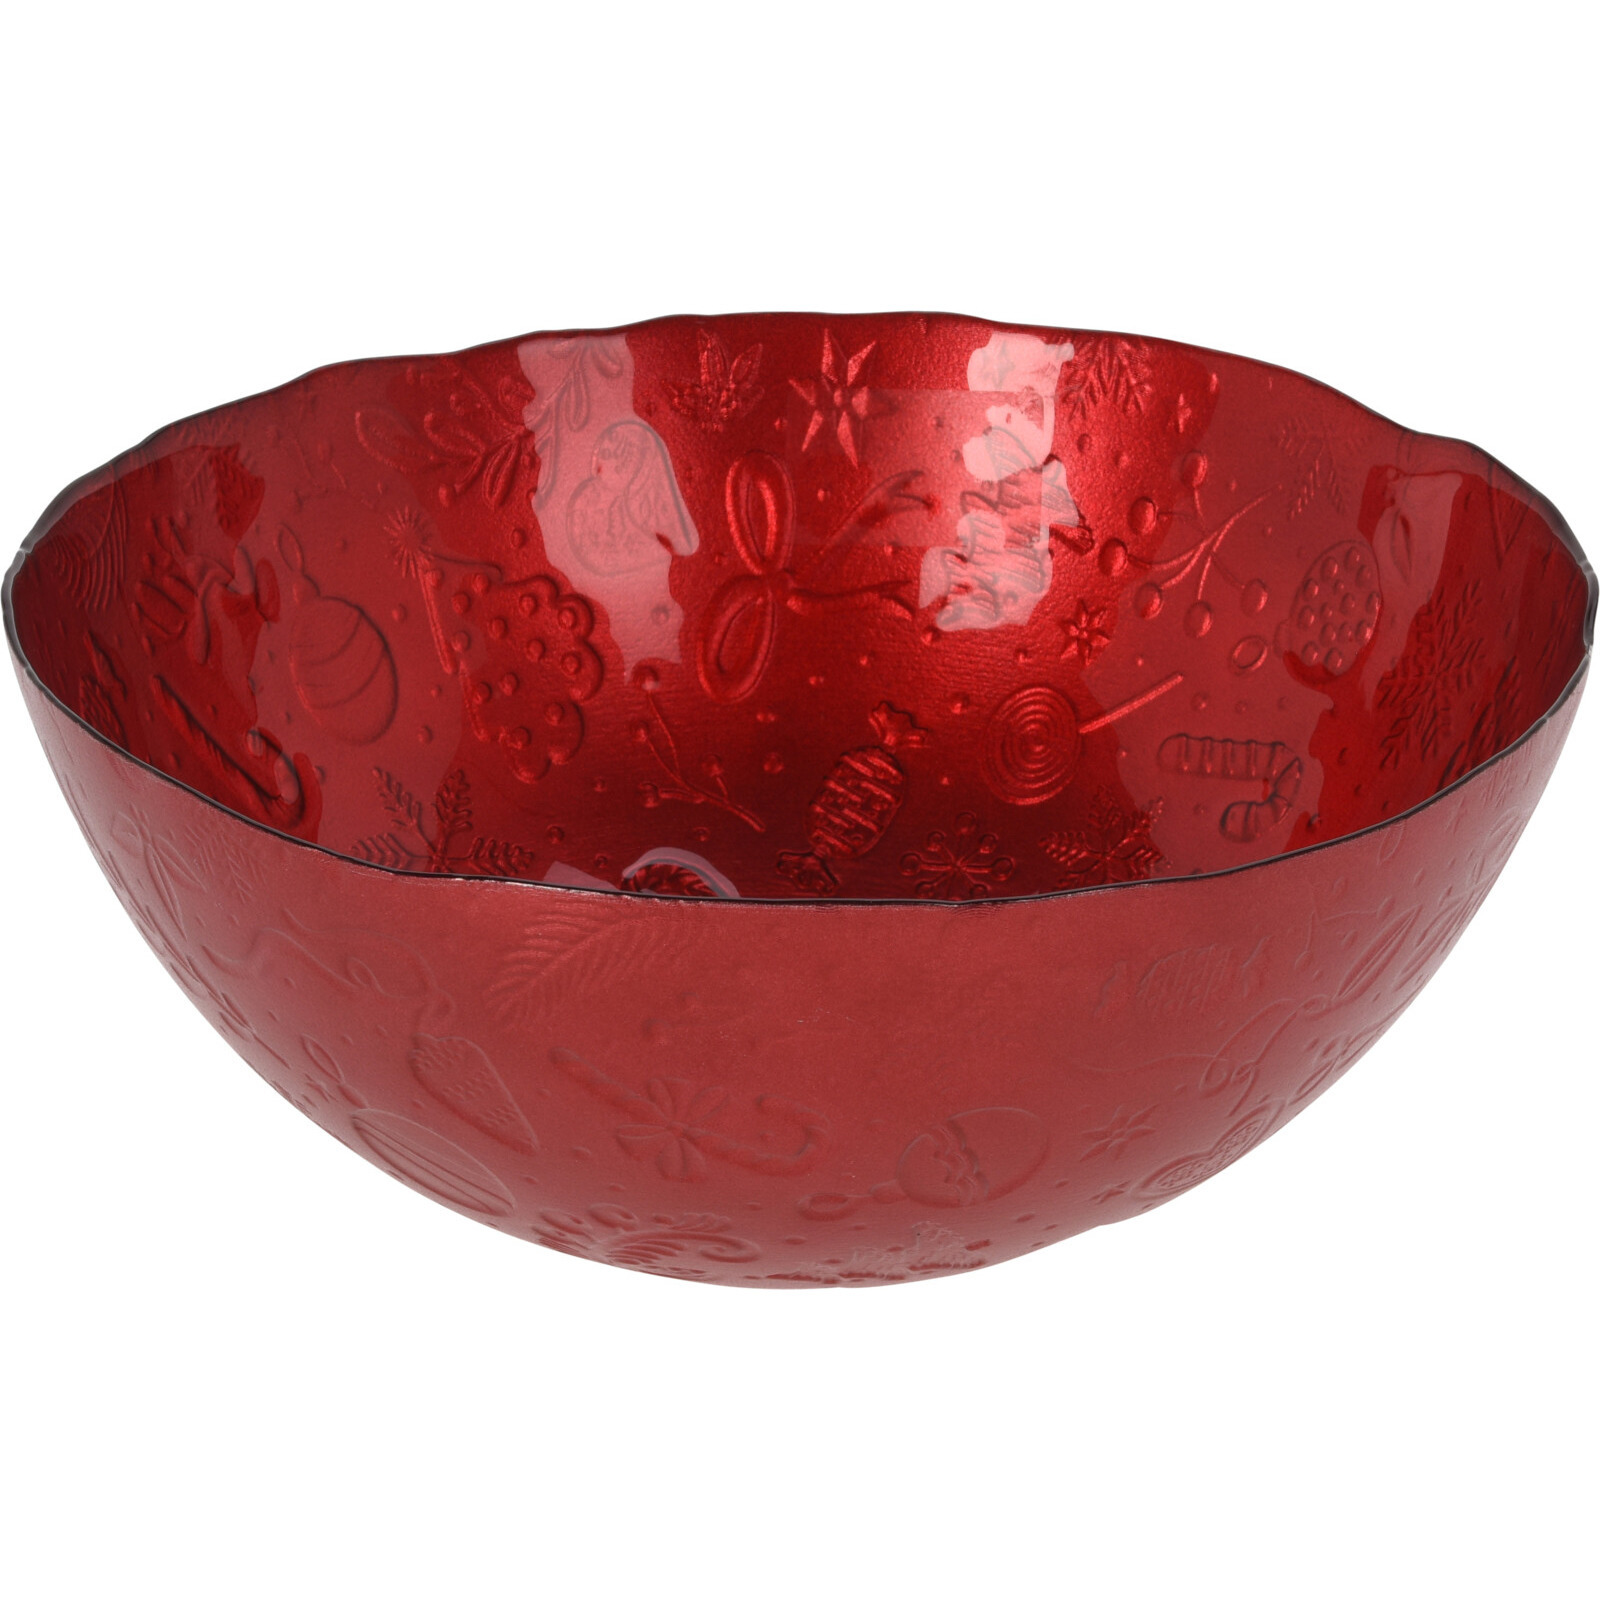 Glazen decoratie schaal-fruitschaal rood rond D28 x H11,5 cm